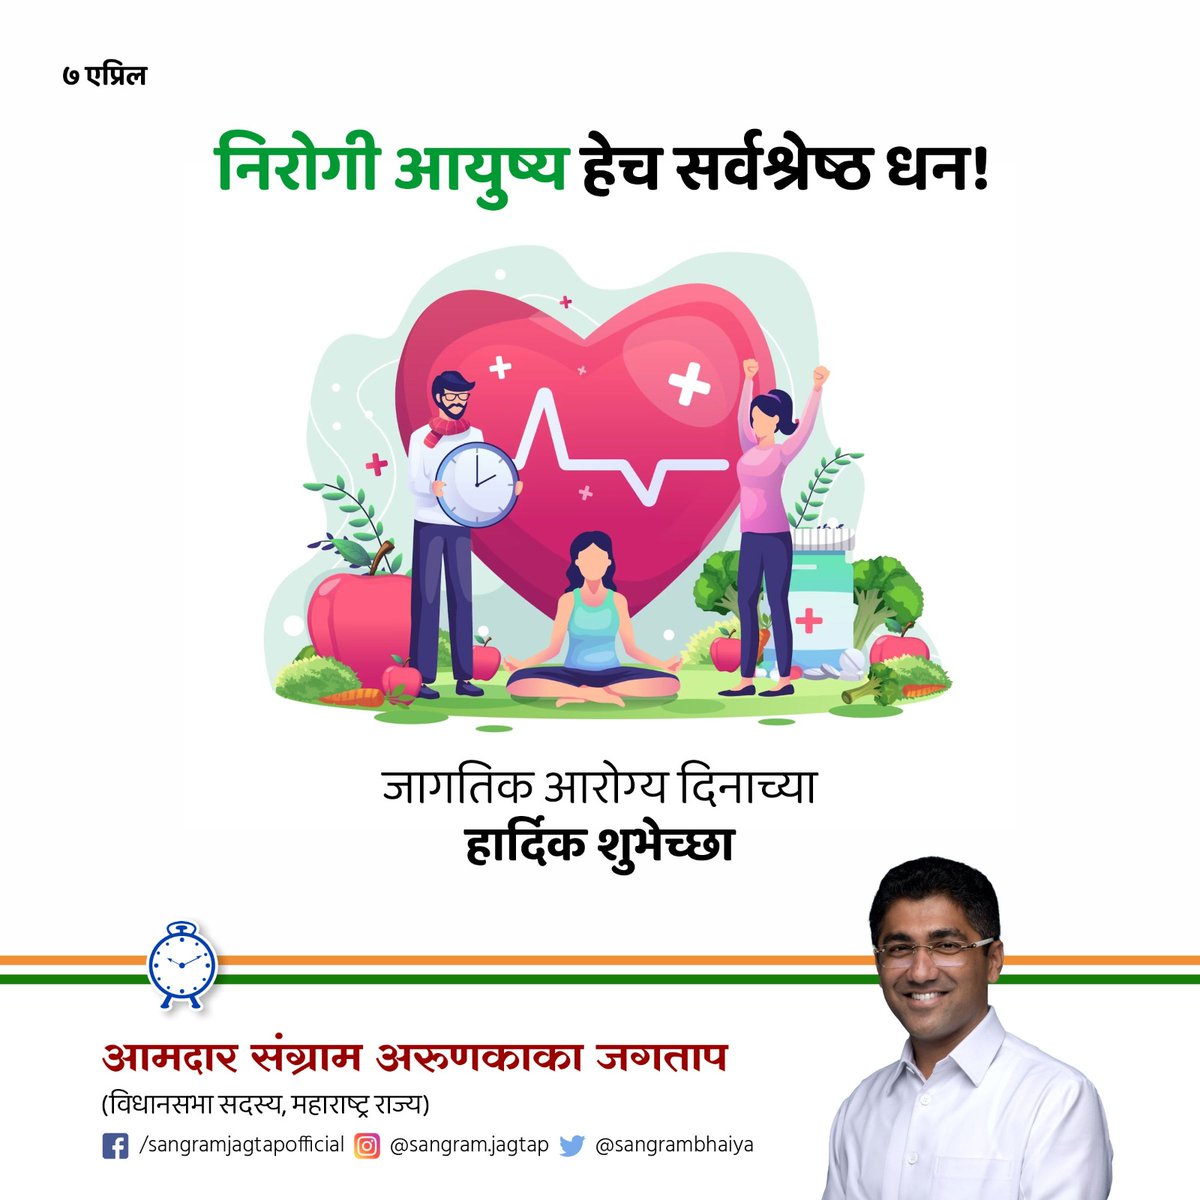 जागतिक आरोग्य दिनाच्या सर्वांना शुभेच्छा! आजच्या जागतिक आरोग्य दिनी निरोगी राहण्याचा संकल्प करूया. #WorldHealthDay #Ahilyanagar #NCP #Rashtrawadi